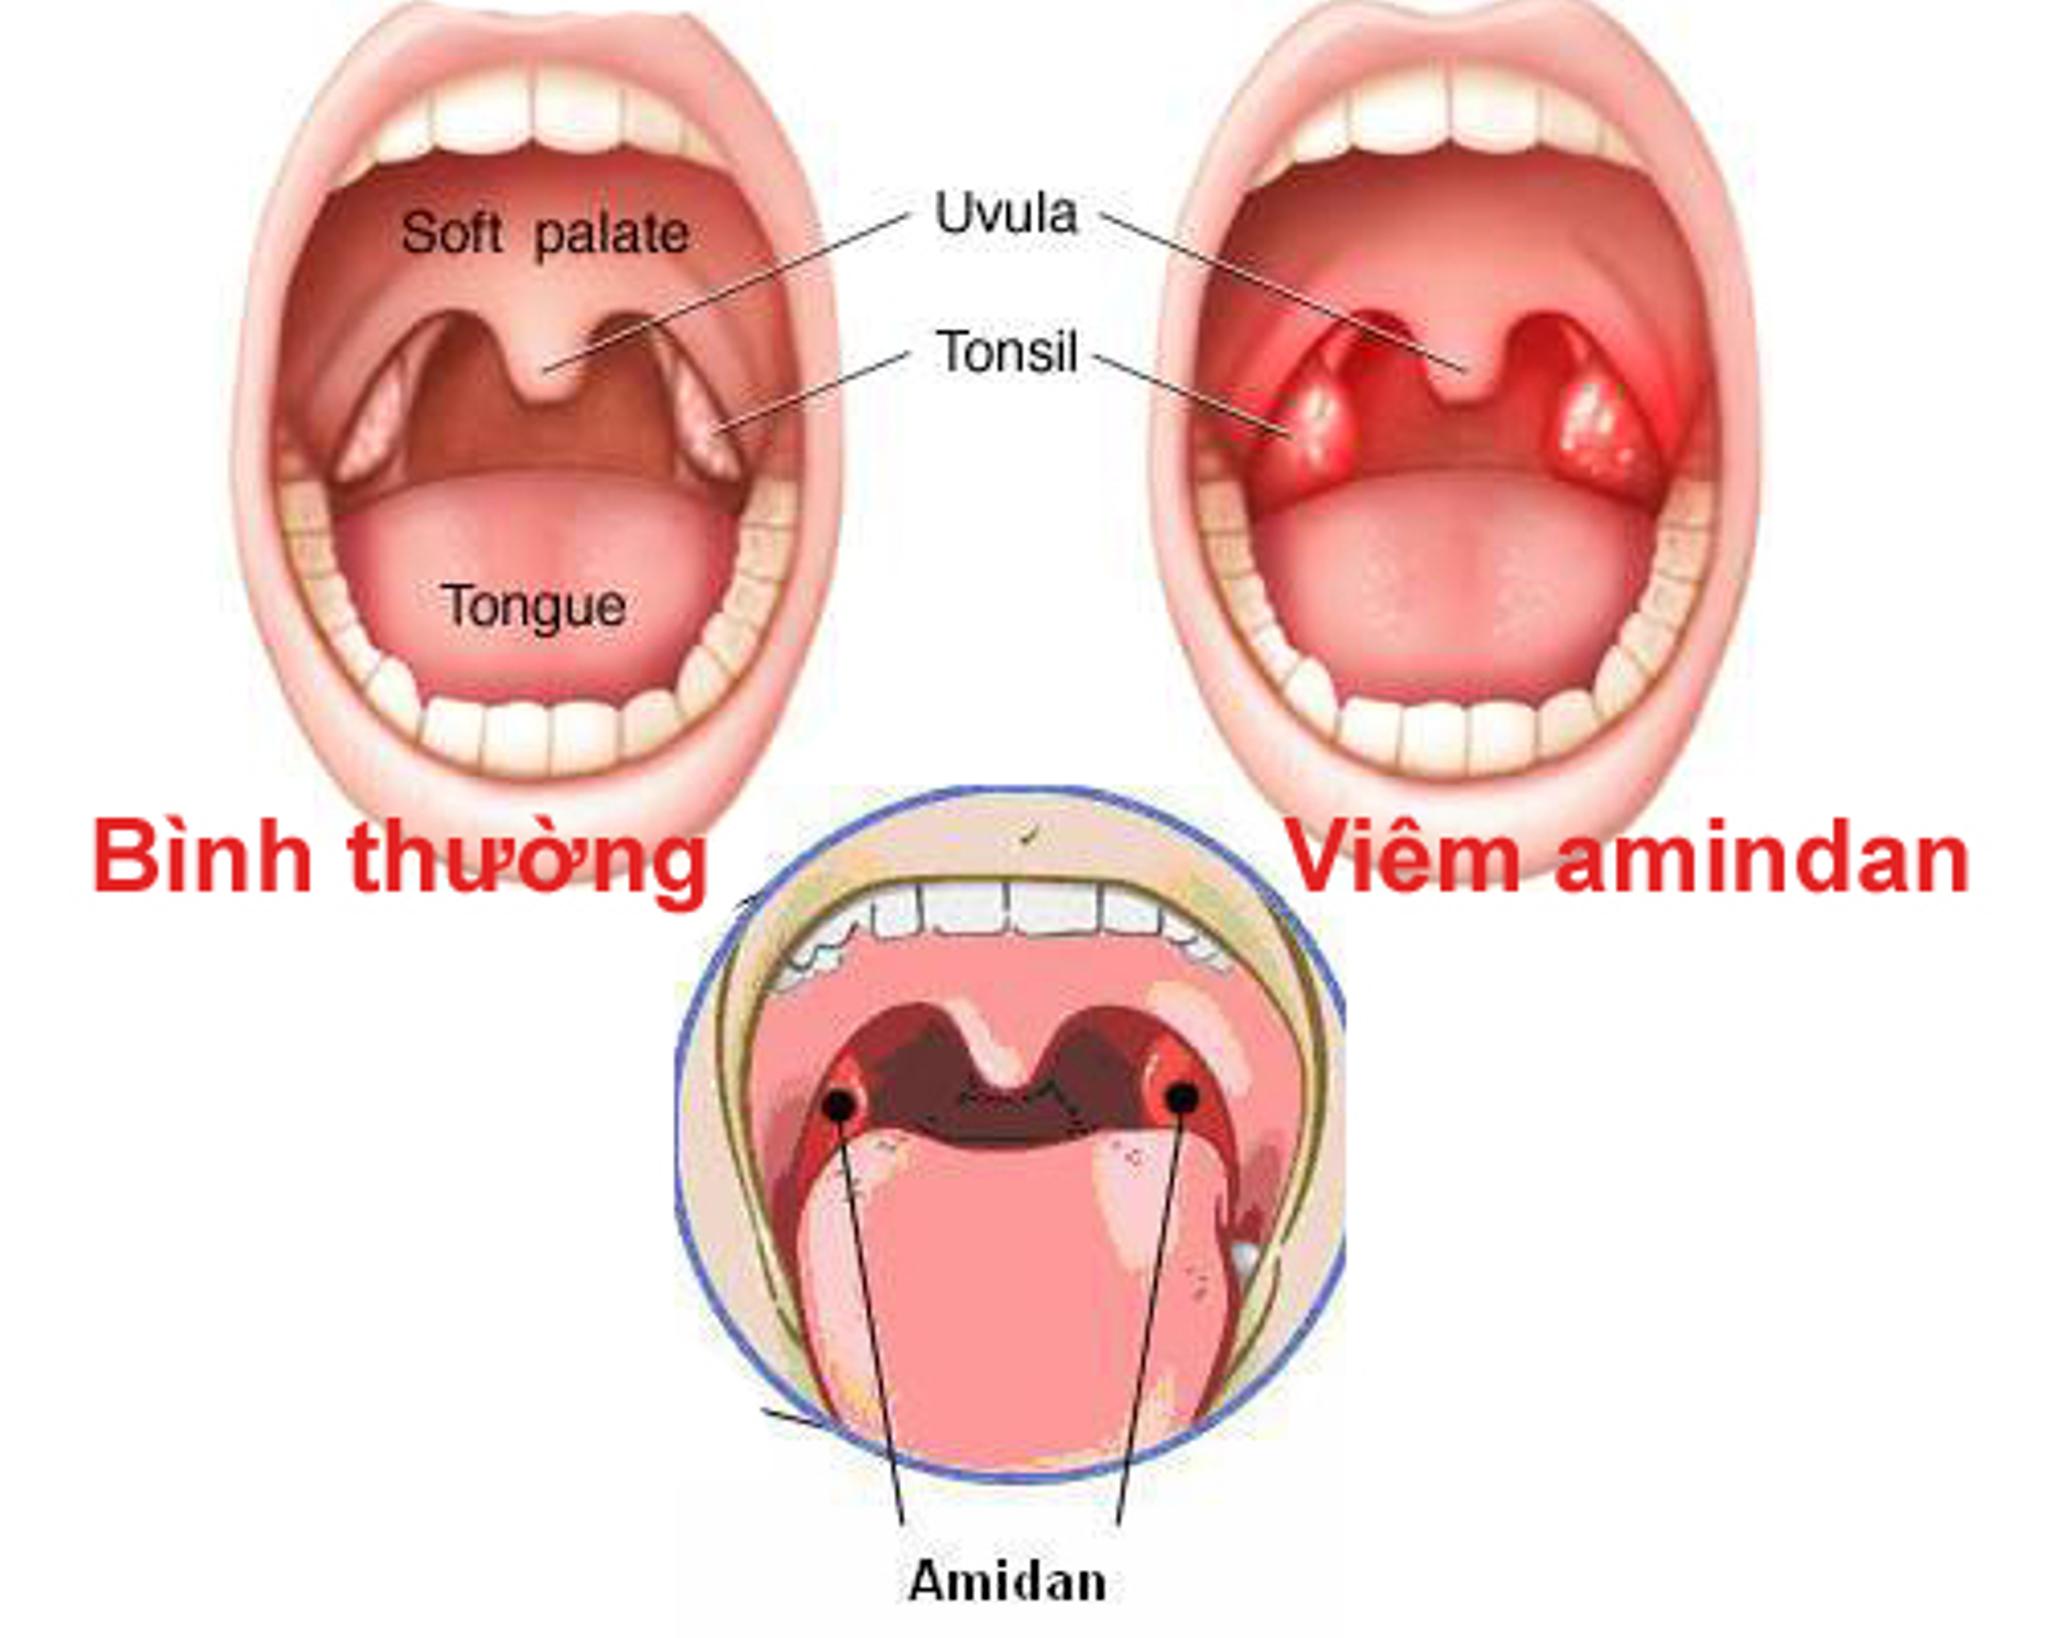 ангина симптомы фото горла